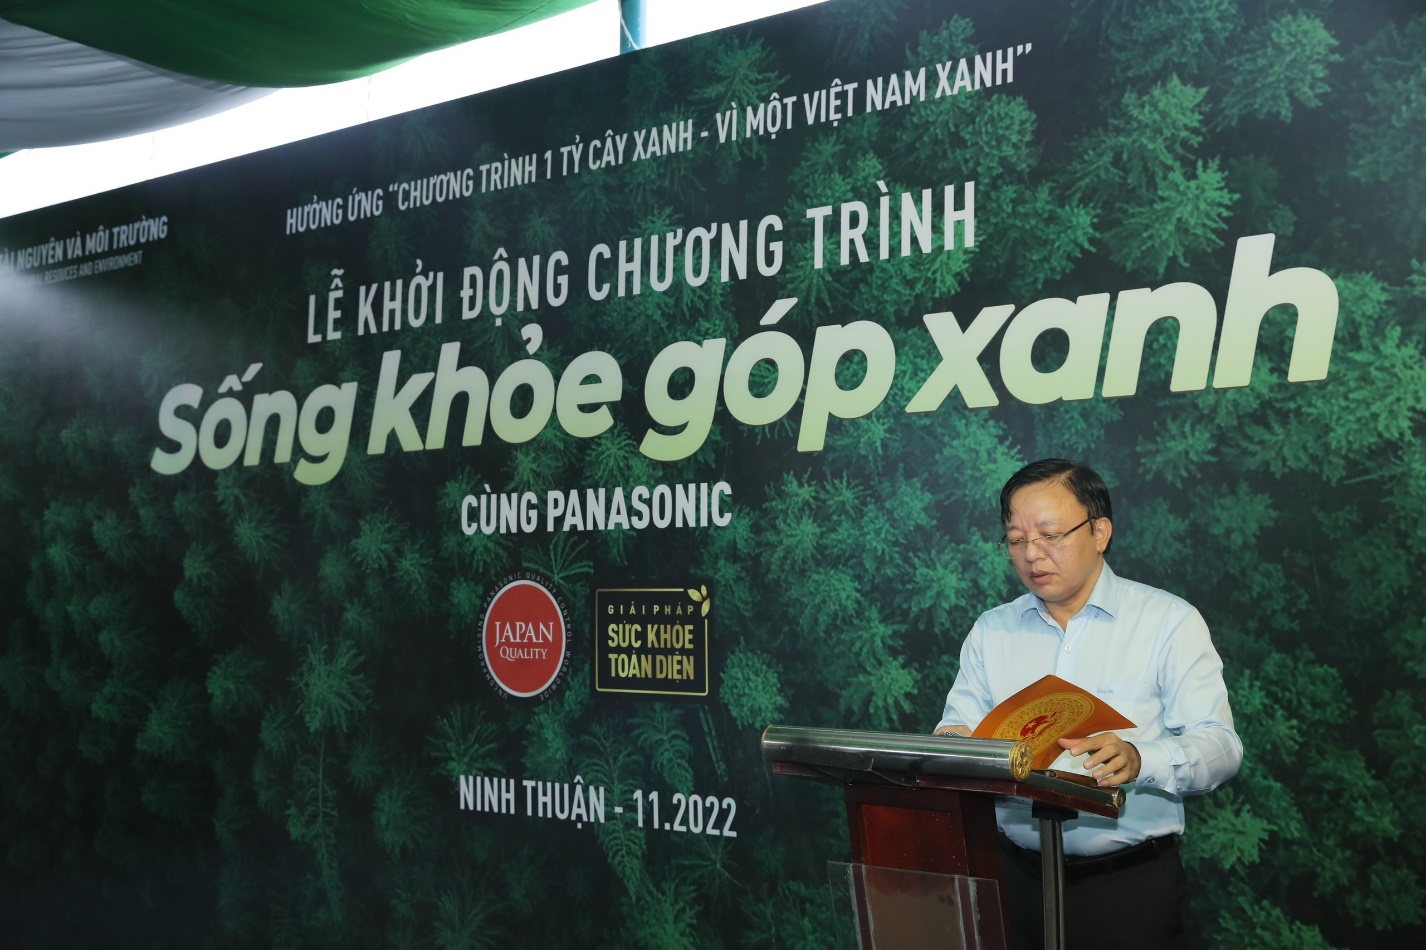 Panasonic khởi động chương trình trồng rừng “Sống khỏe góp xanh” chung sức trồng 1 tỷ cây xanh – vì một Việt Nam xanh - 5